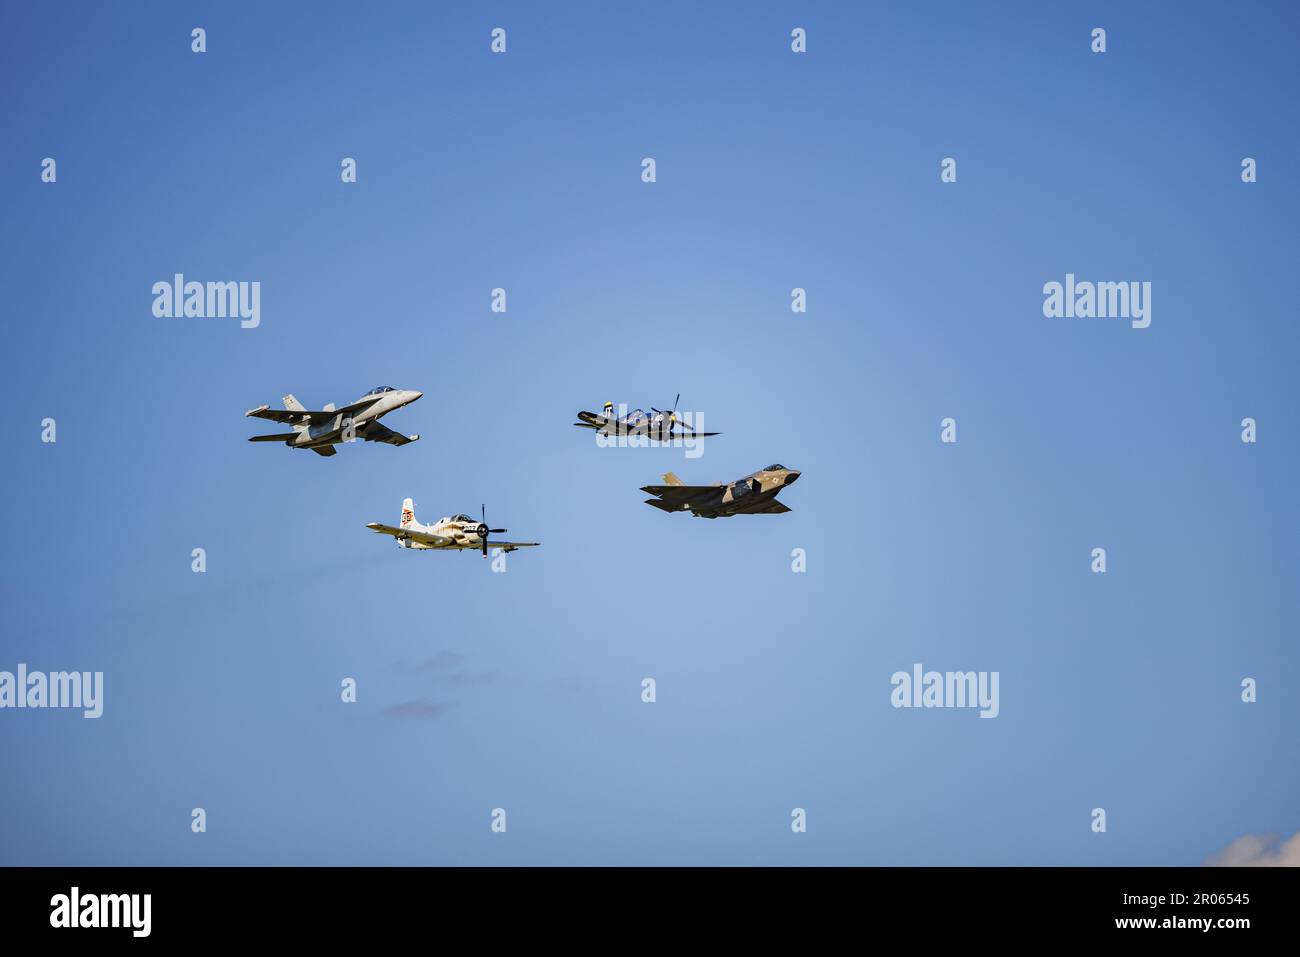 Une photo à faible angle des avions Boeing, Lockheed Martin et Corsair contre un ciel bleu lors du salon aérien de l'aéroport régional de Wittman. Banque D'Images